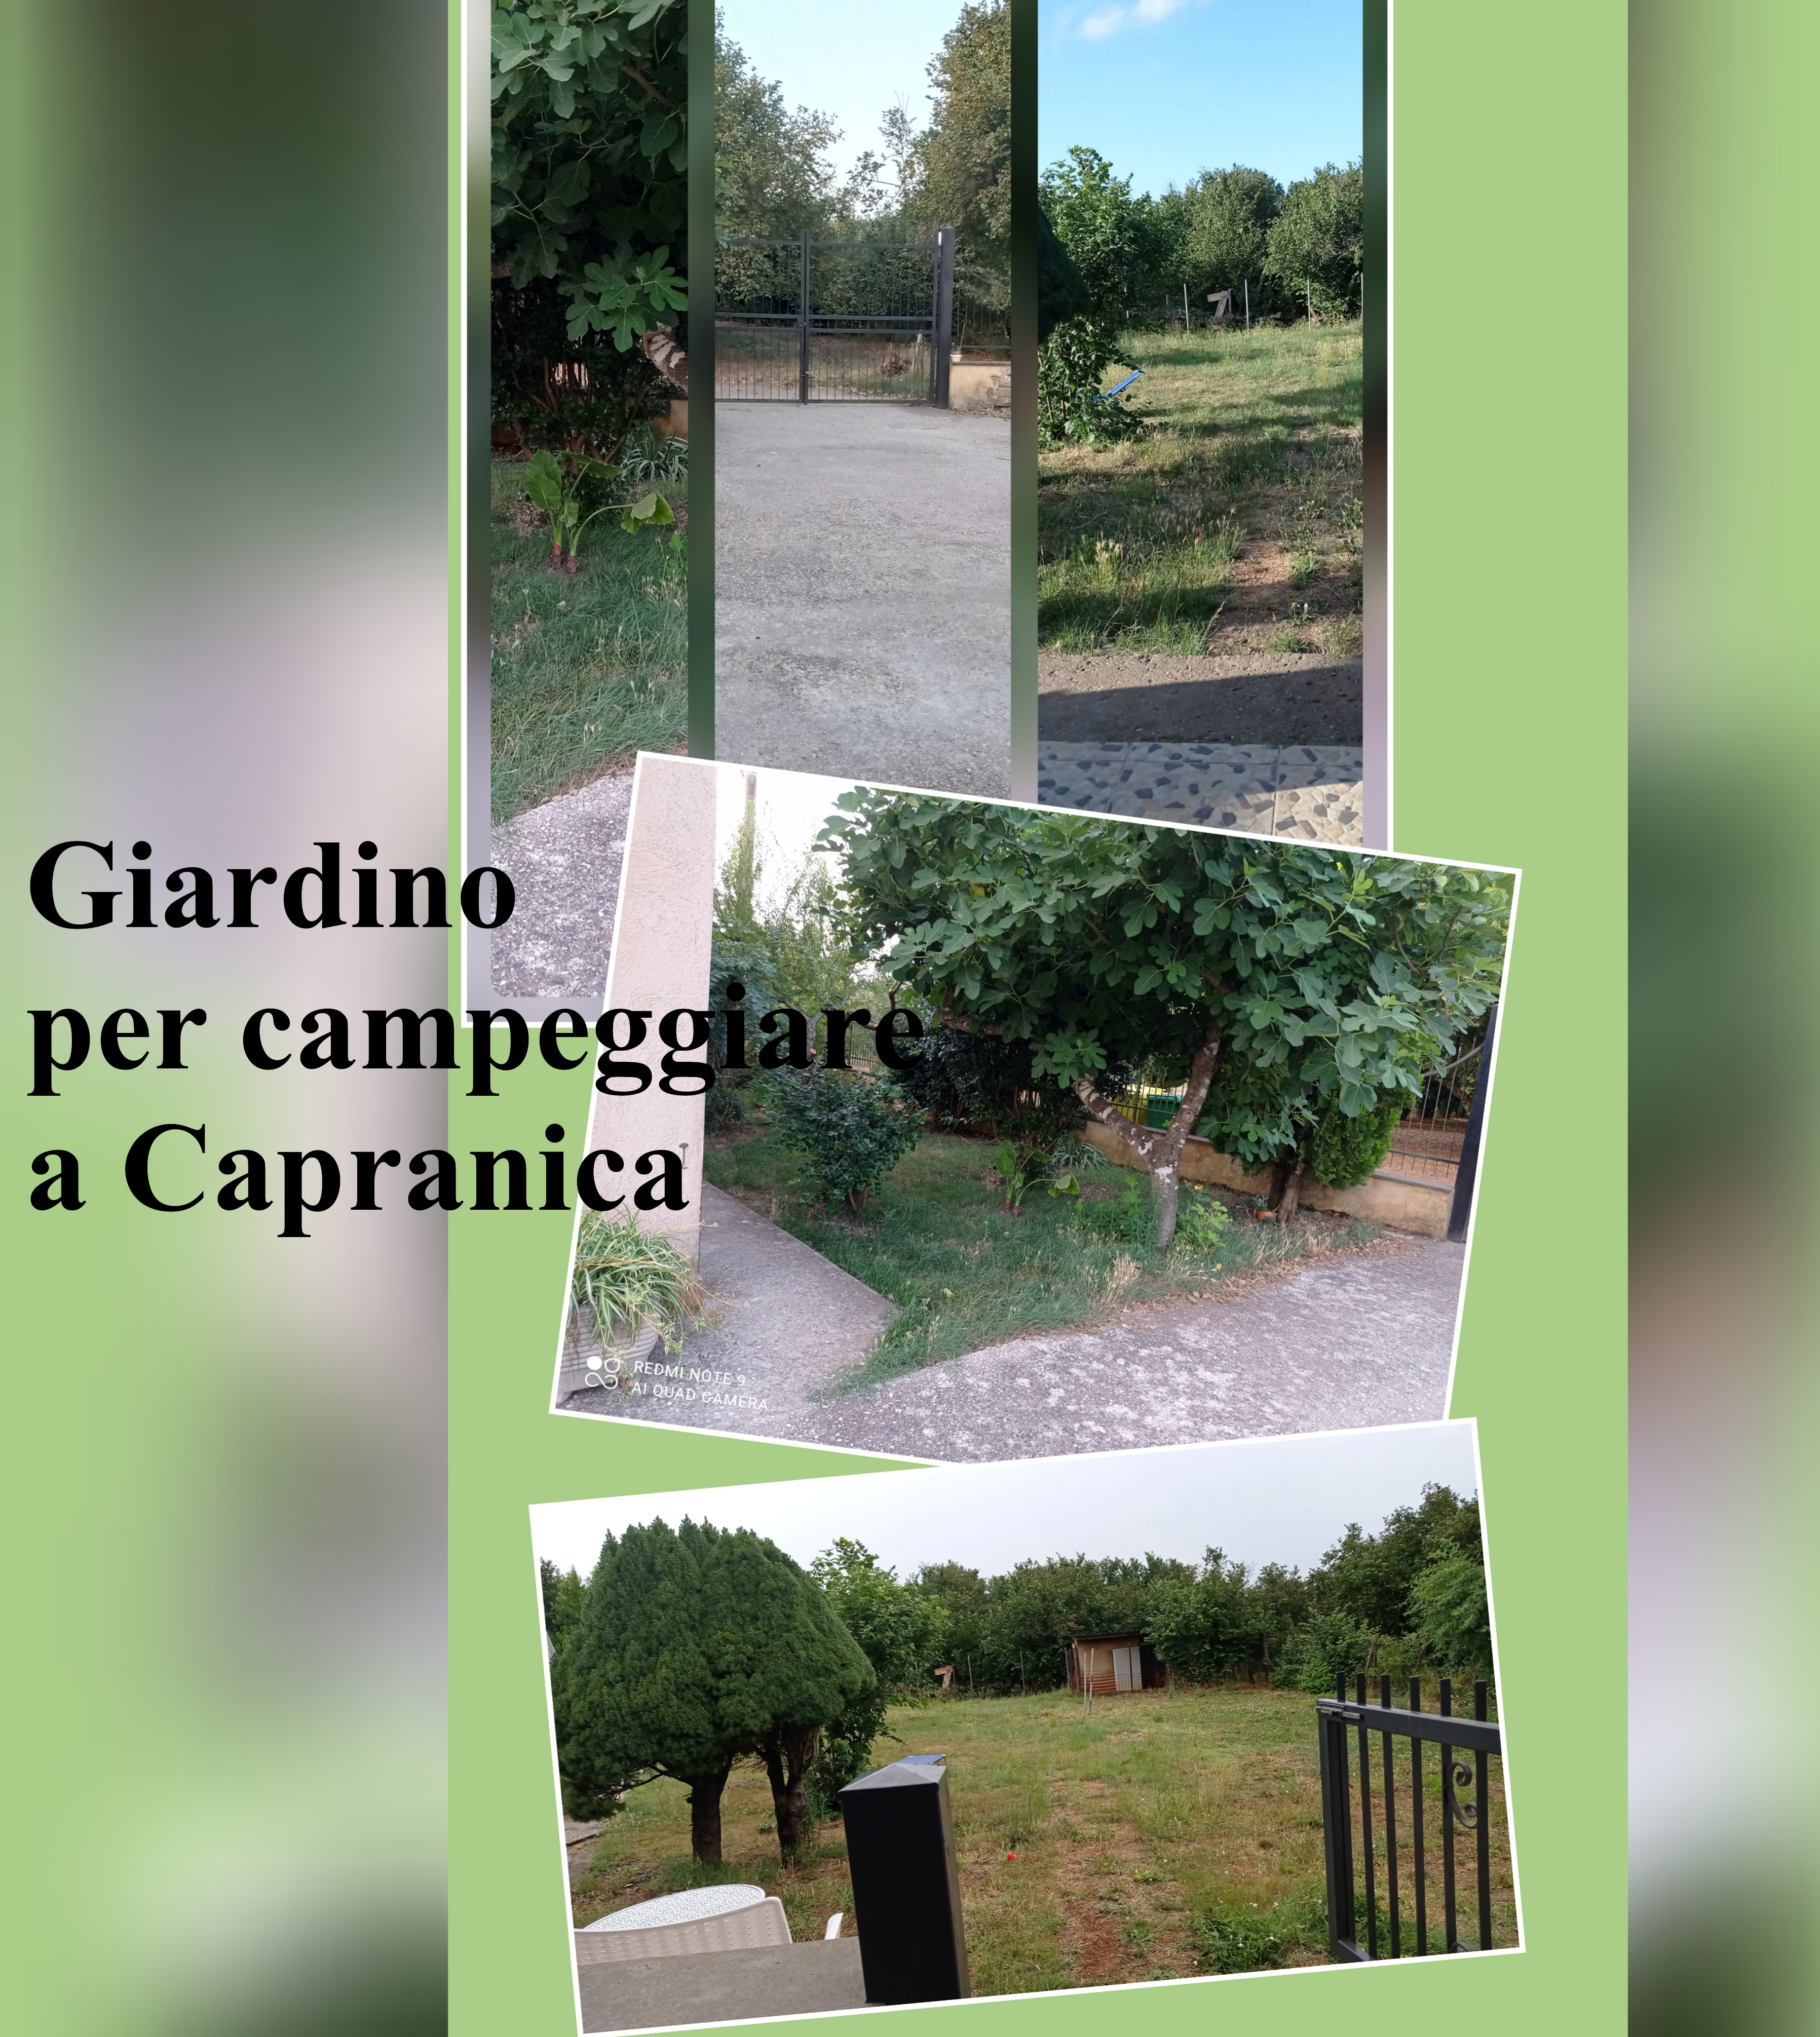 Camping garden in Capranica